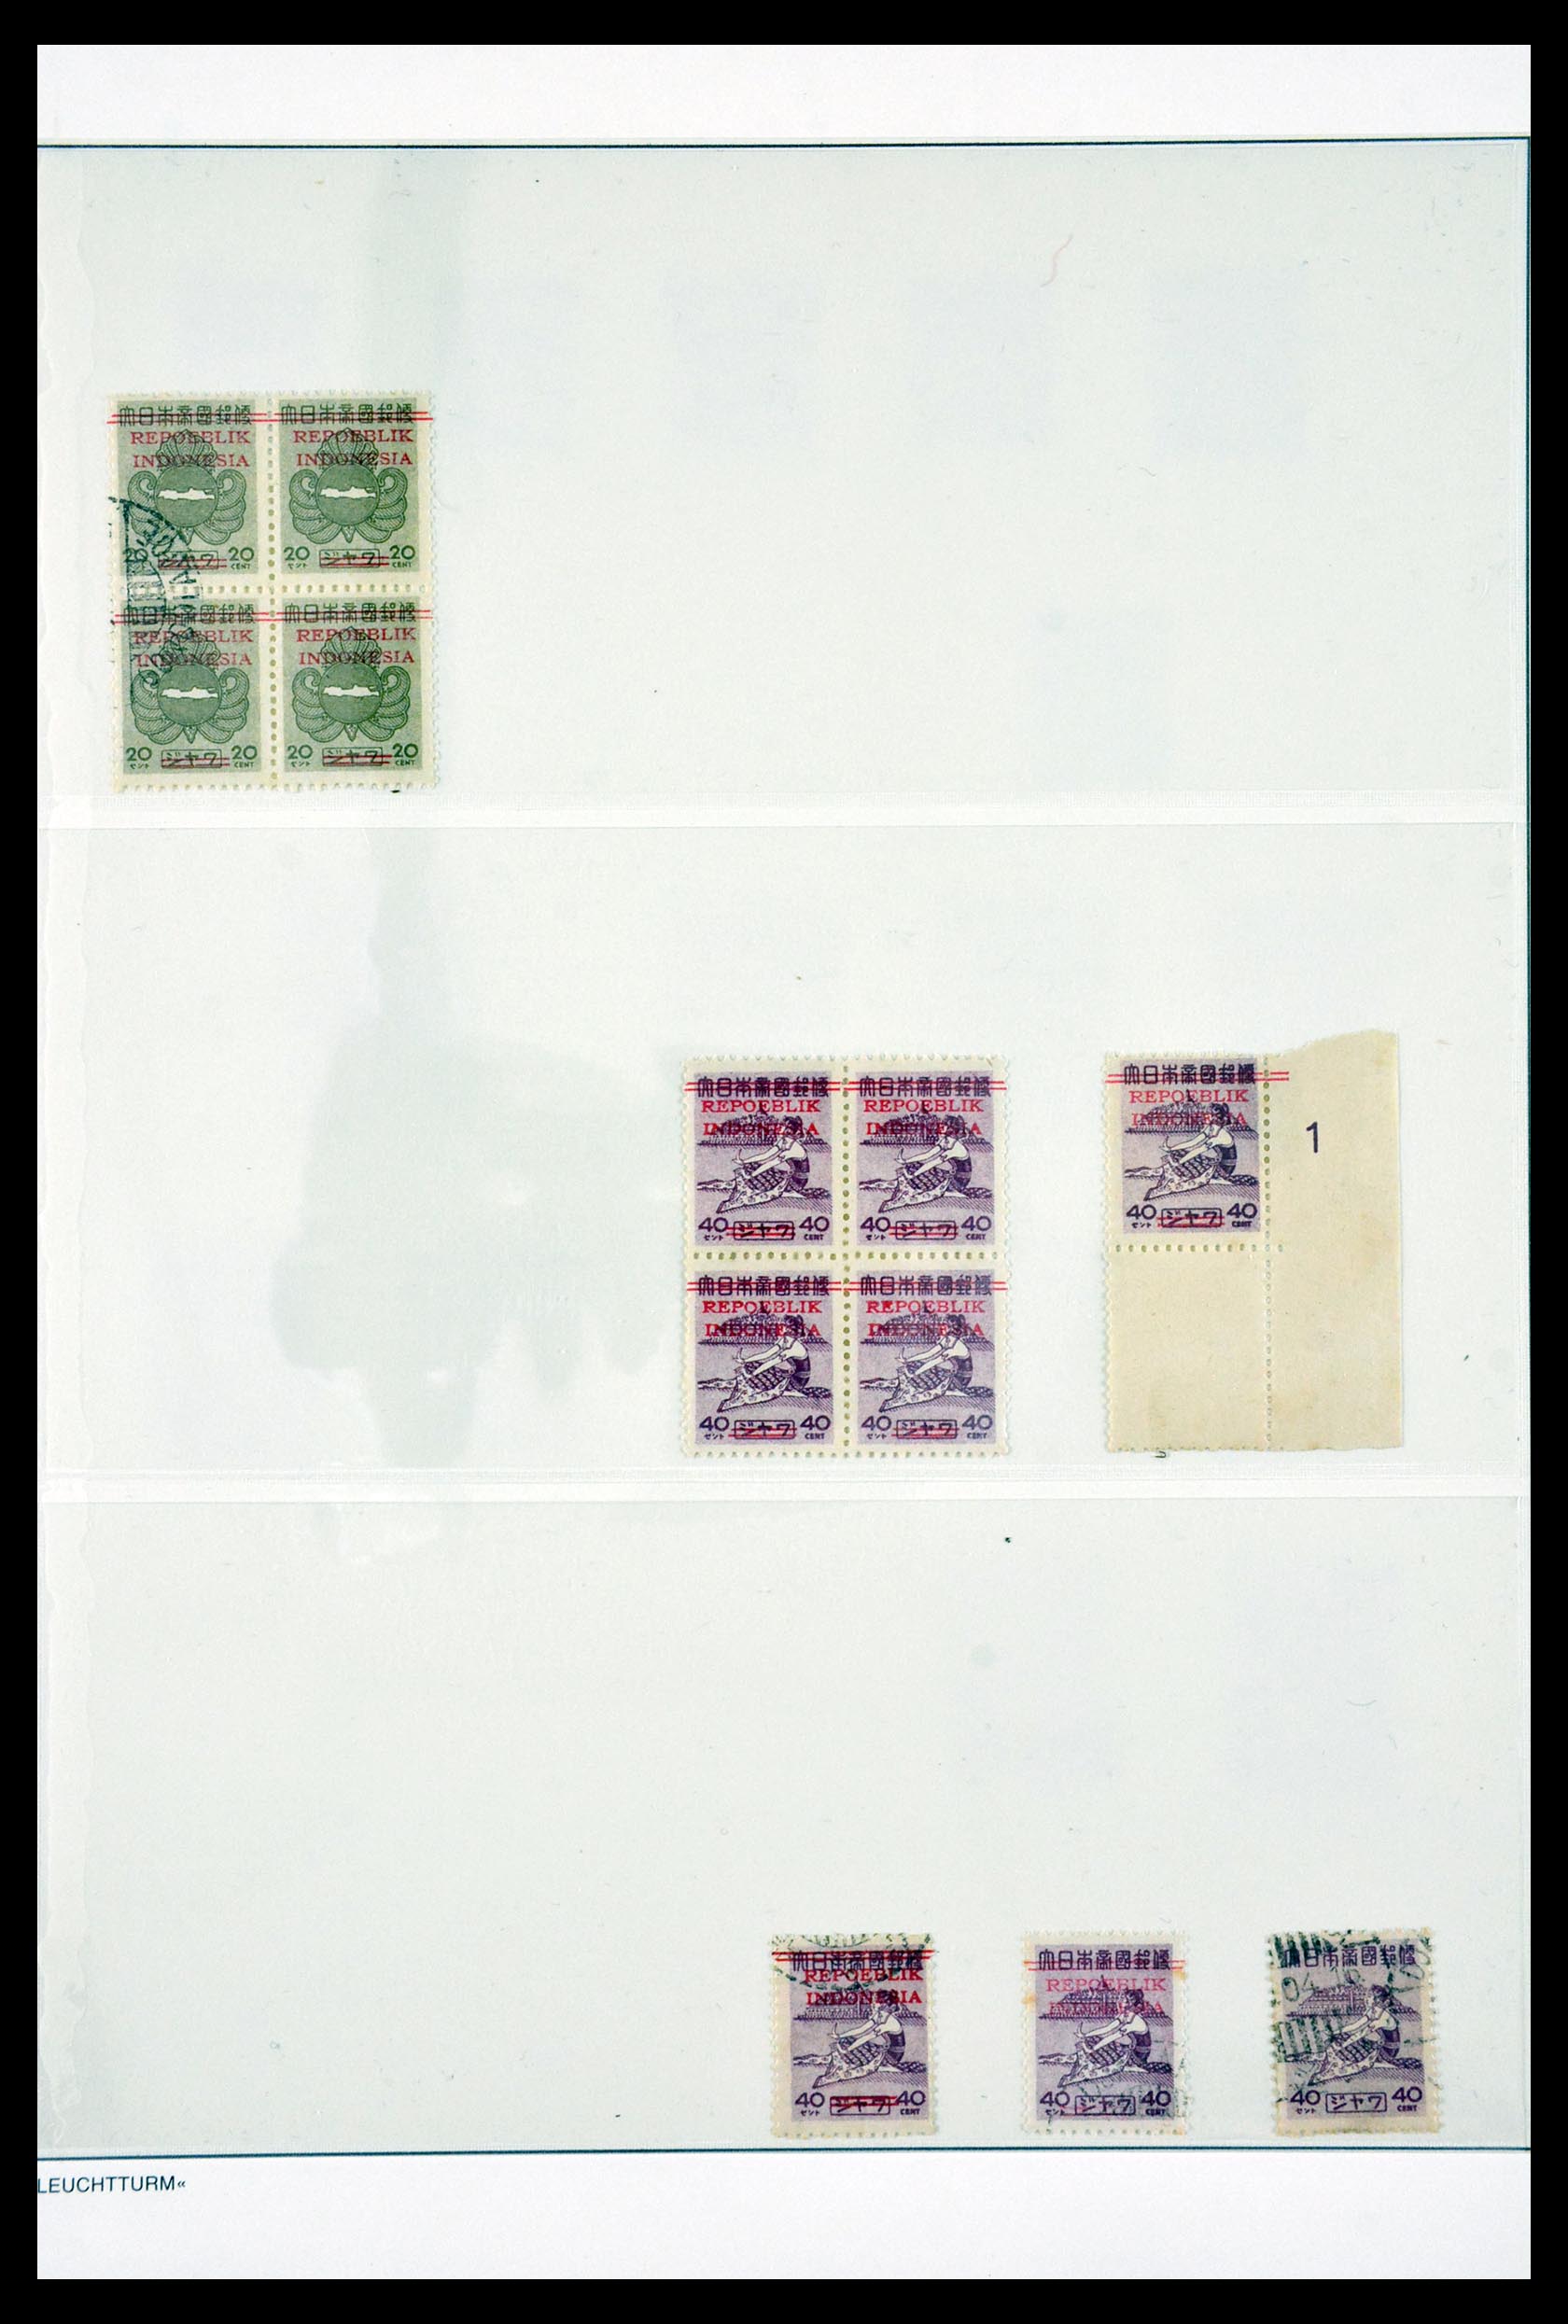 29786 008 - 29786 Interimperiod Indonesia 1945-1948.